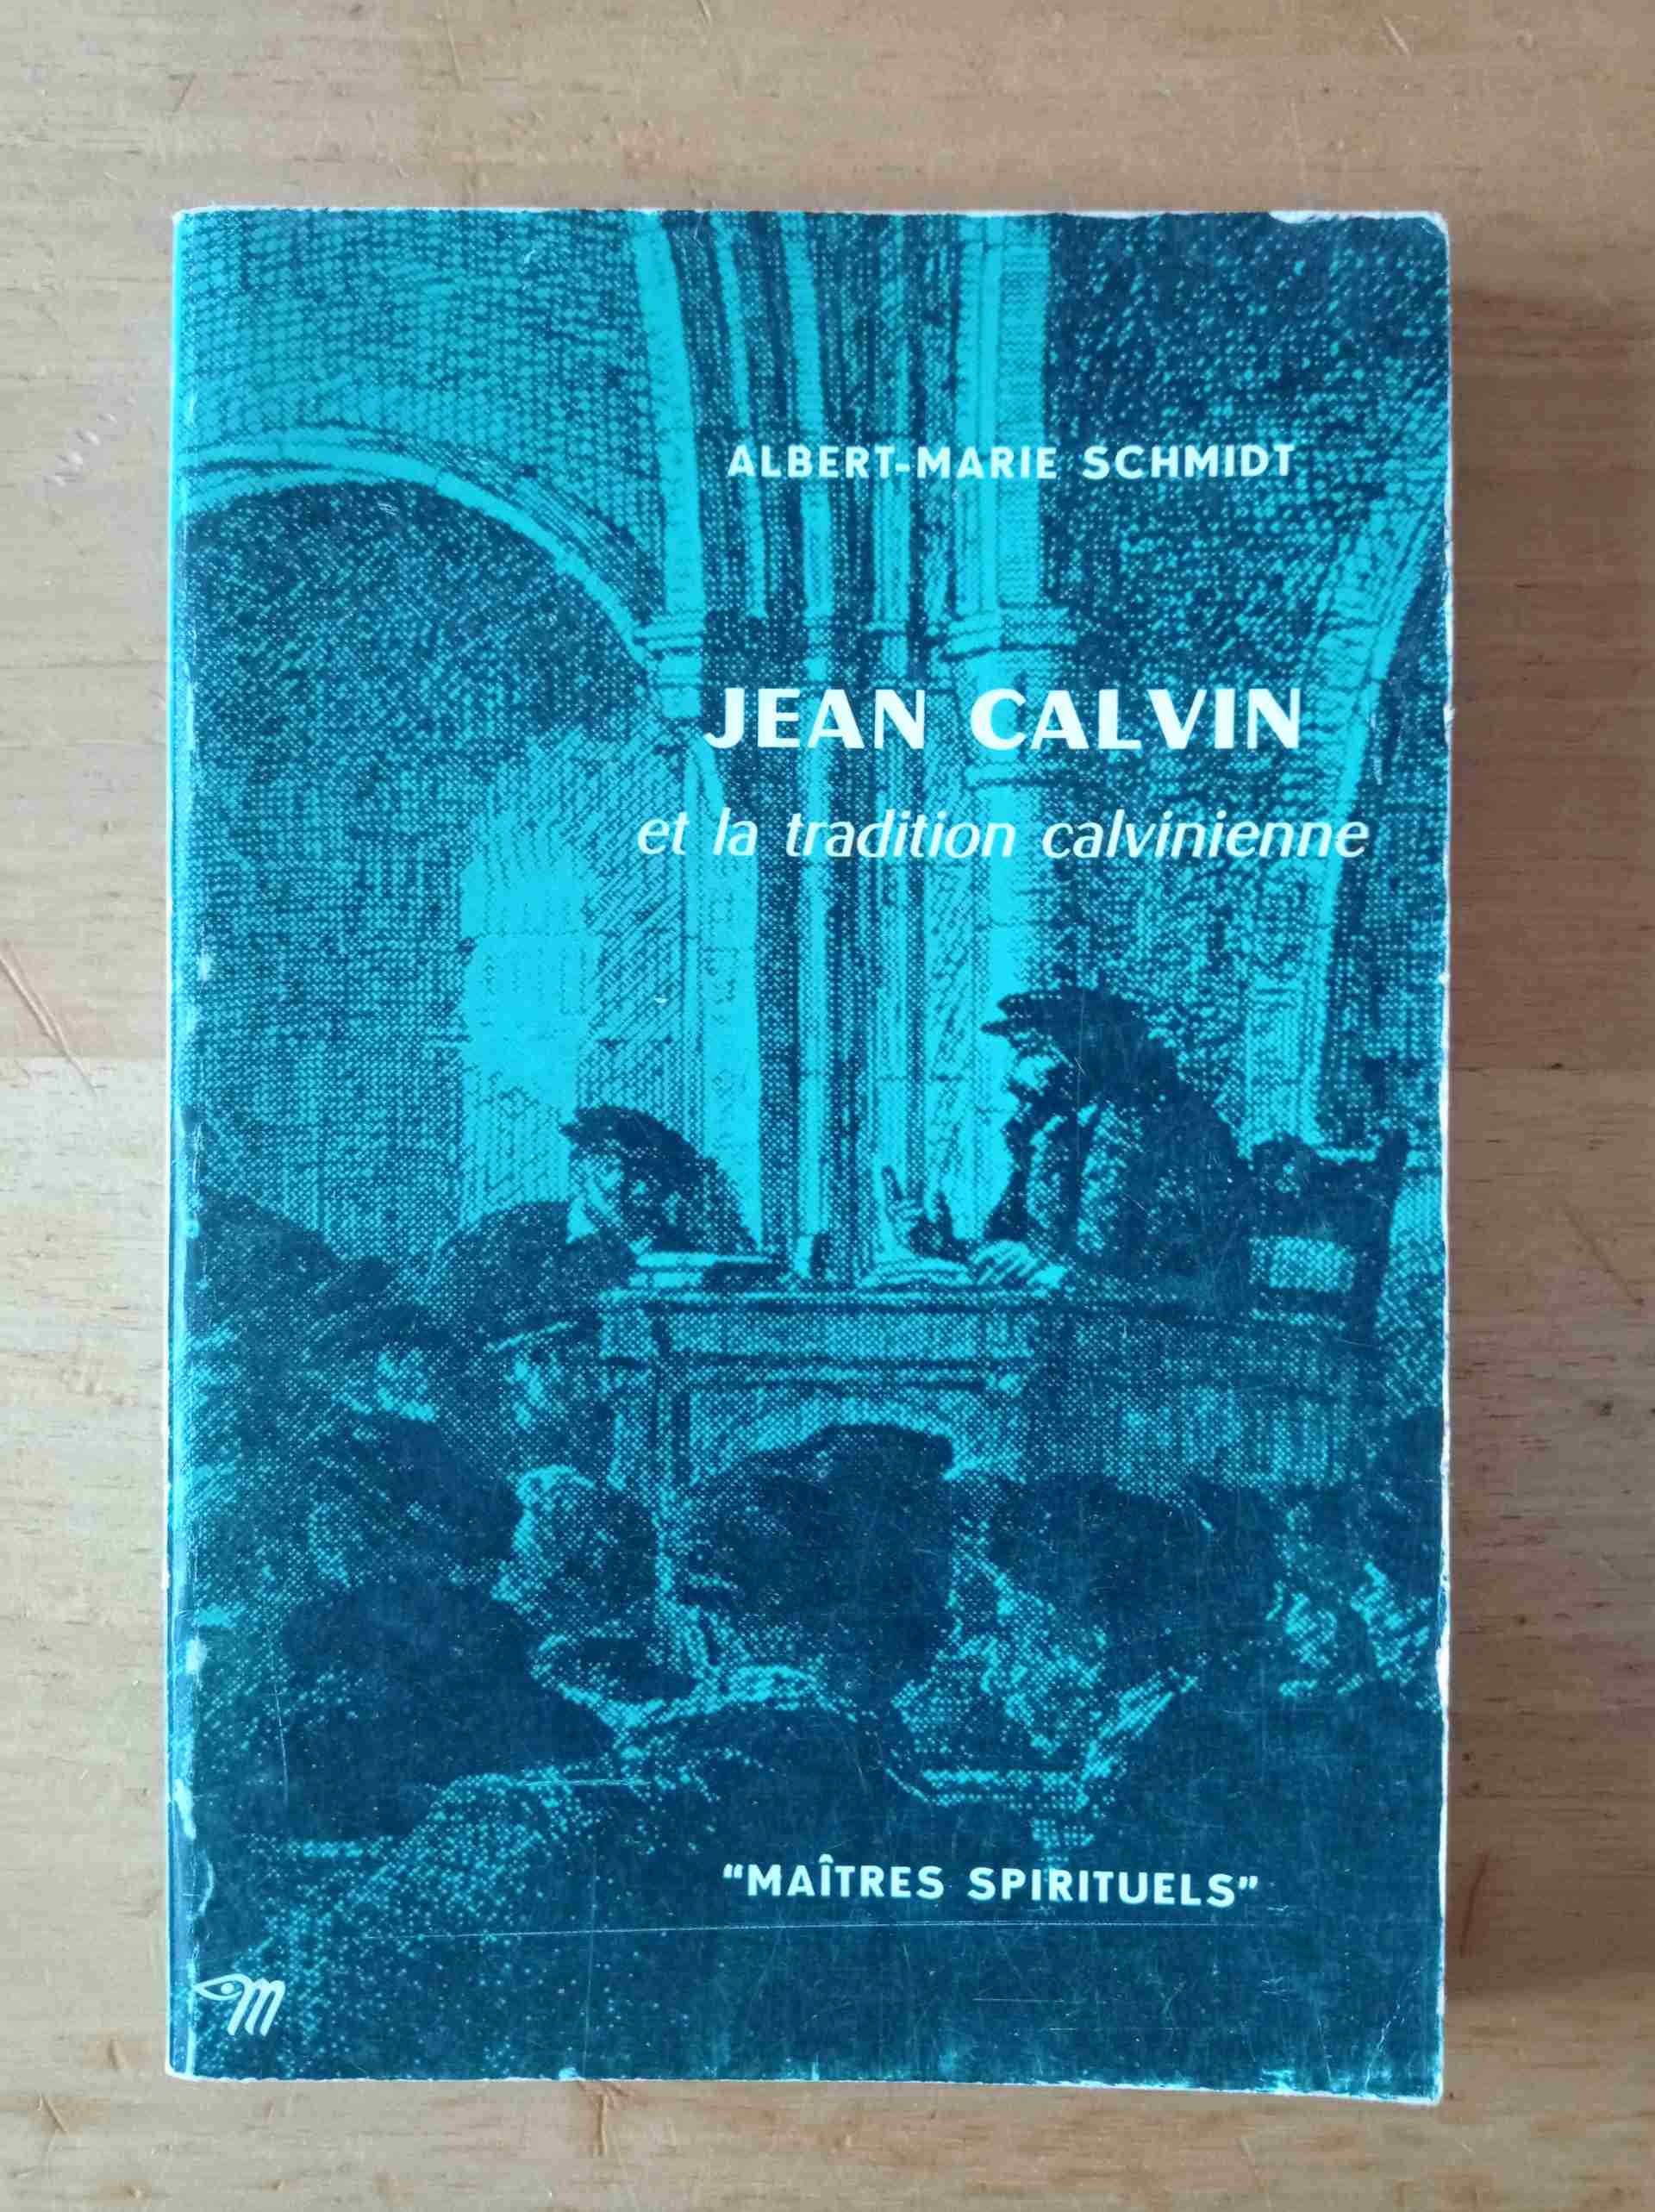 Jean Calvin grazie et la tradition calvinienne